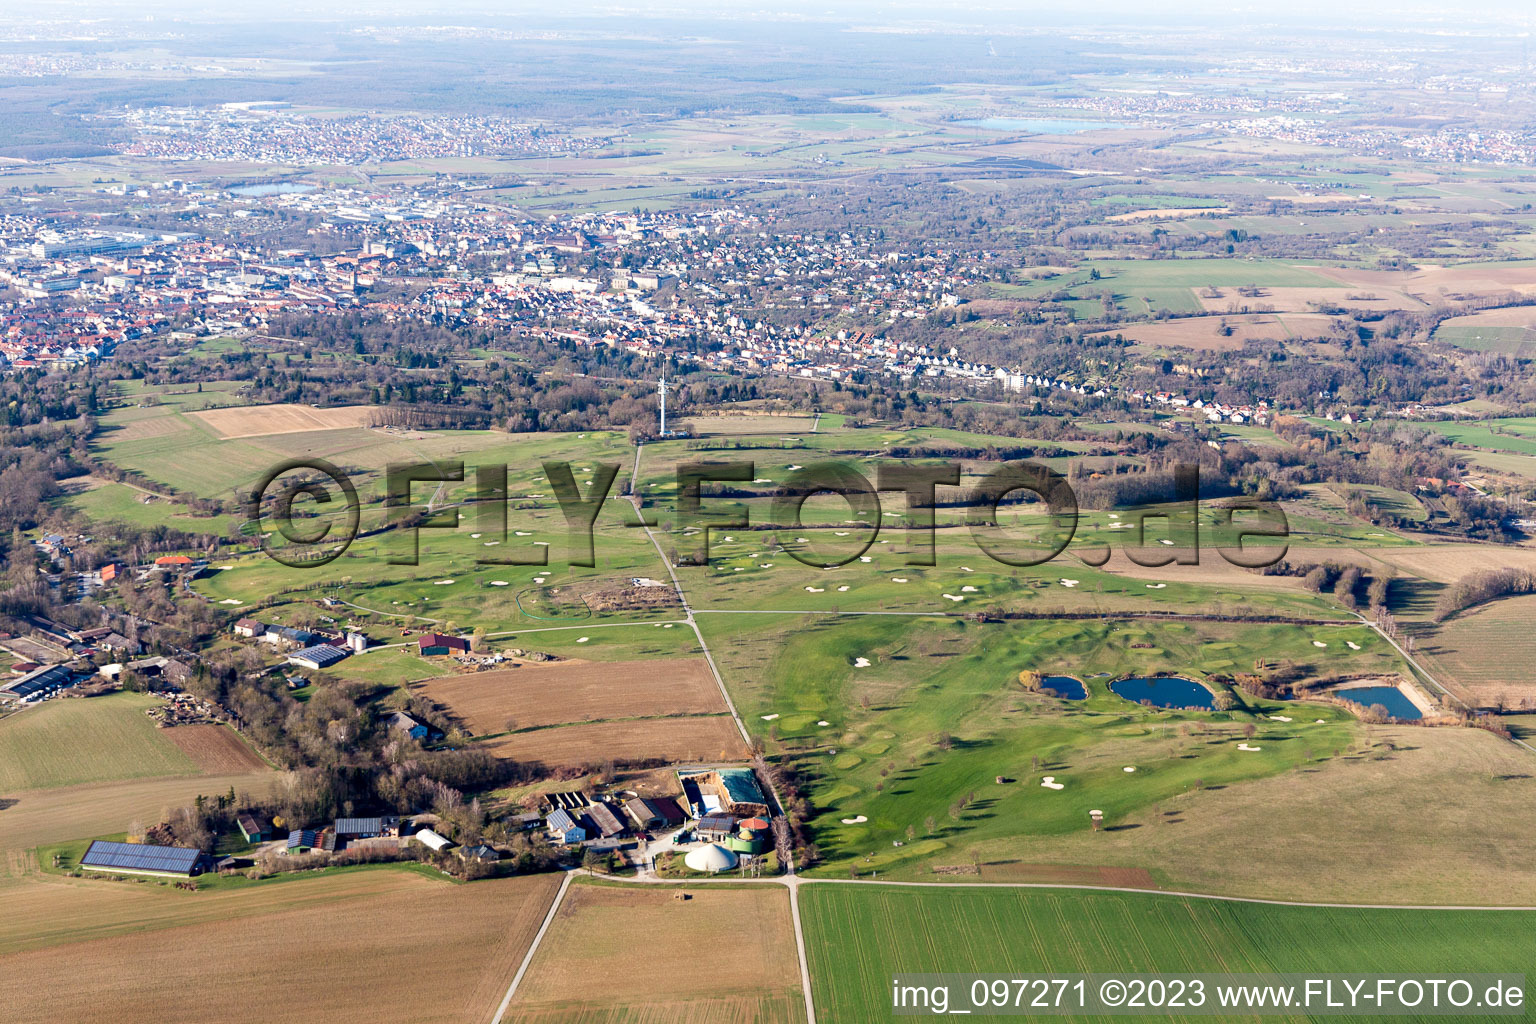 Luftbild von Golfclub Bruchsal e.V im Bundesland Baden-Württemberg, Deutschland